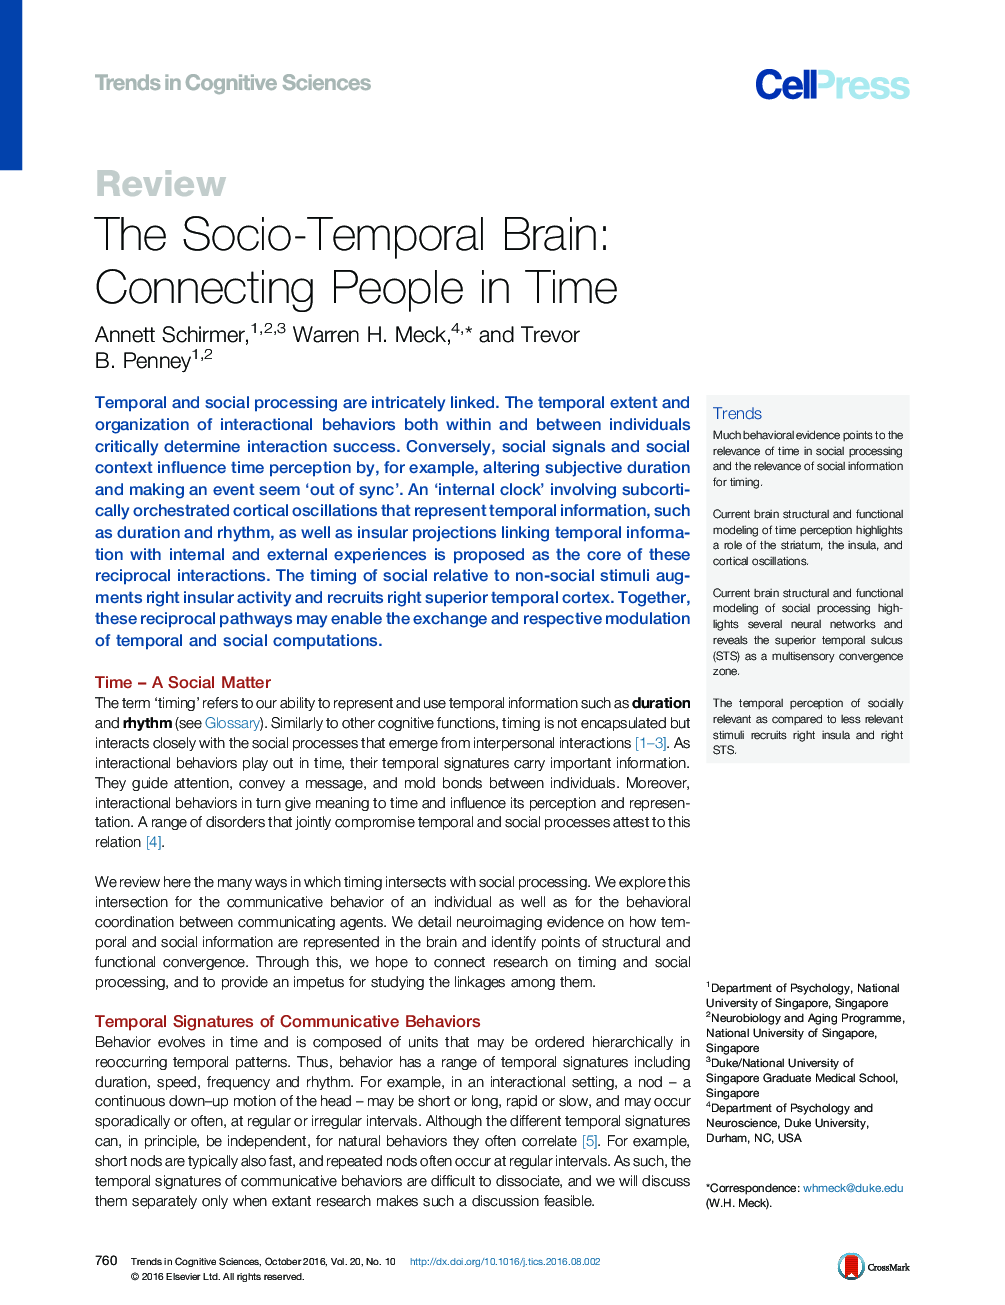 مغز اجتماعی و موقتی: اتصال مردم به زمان 